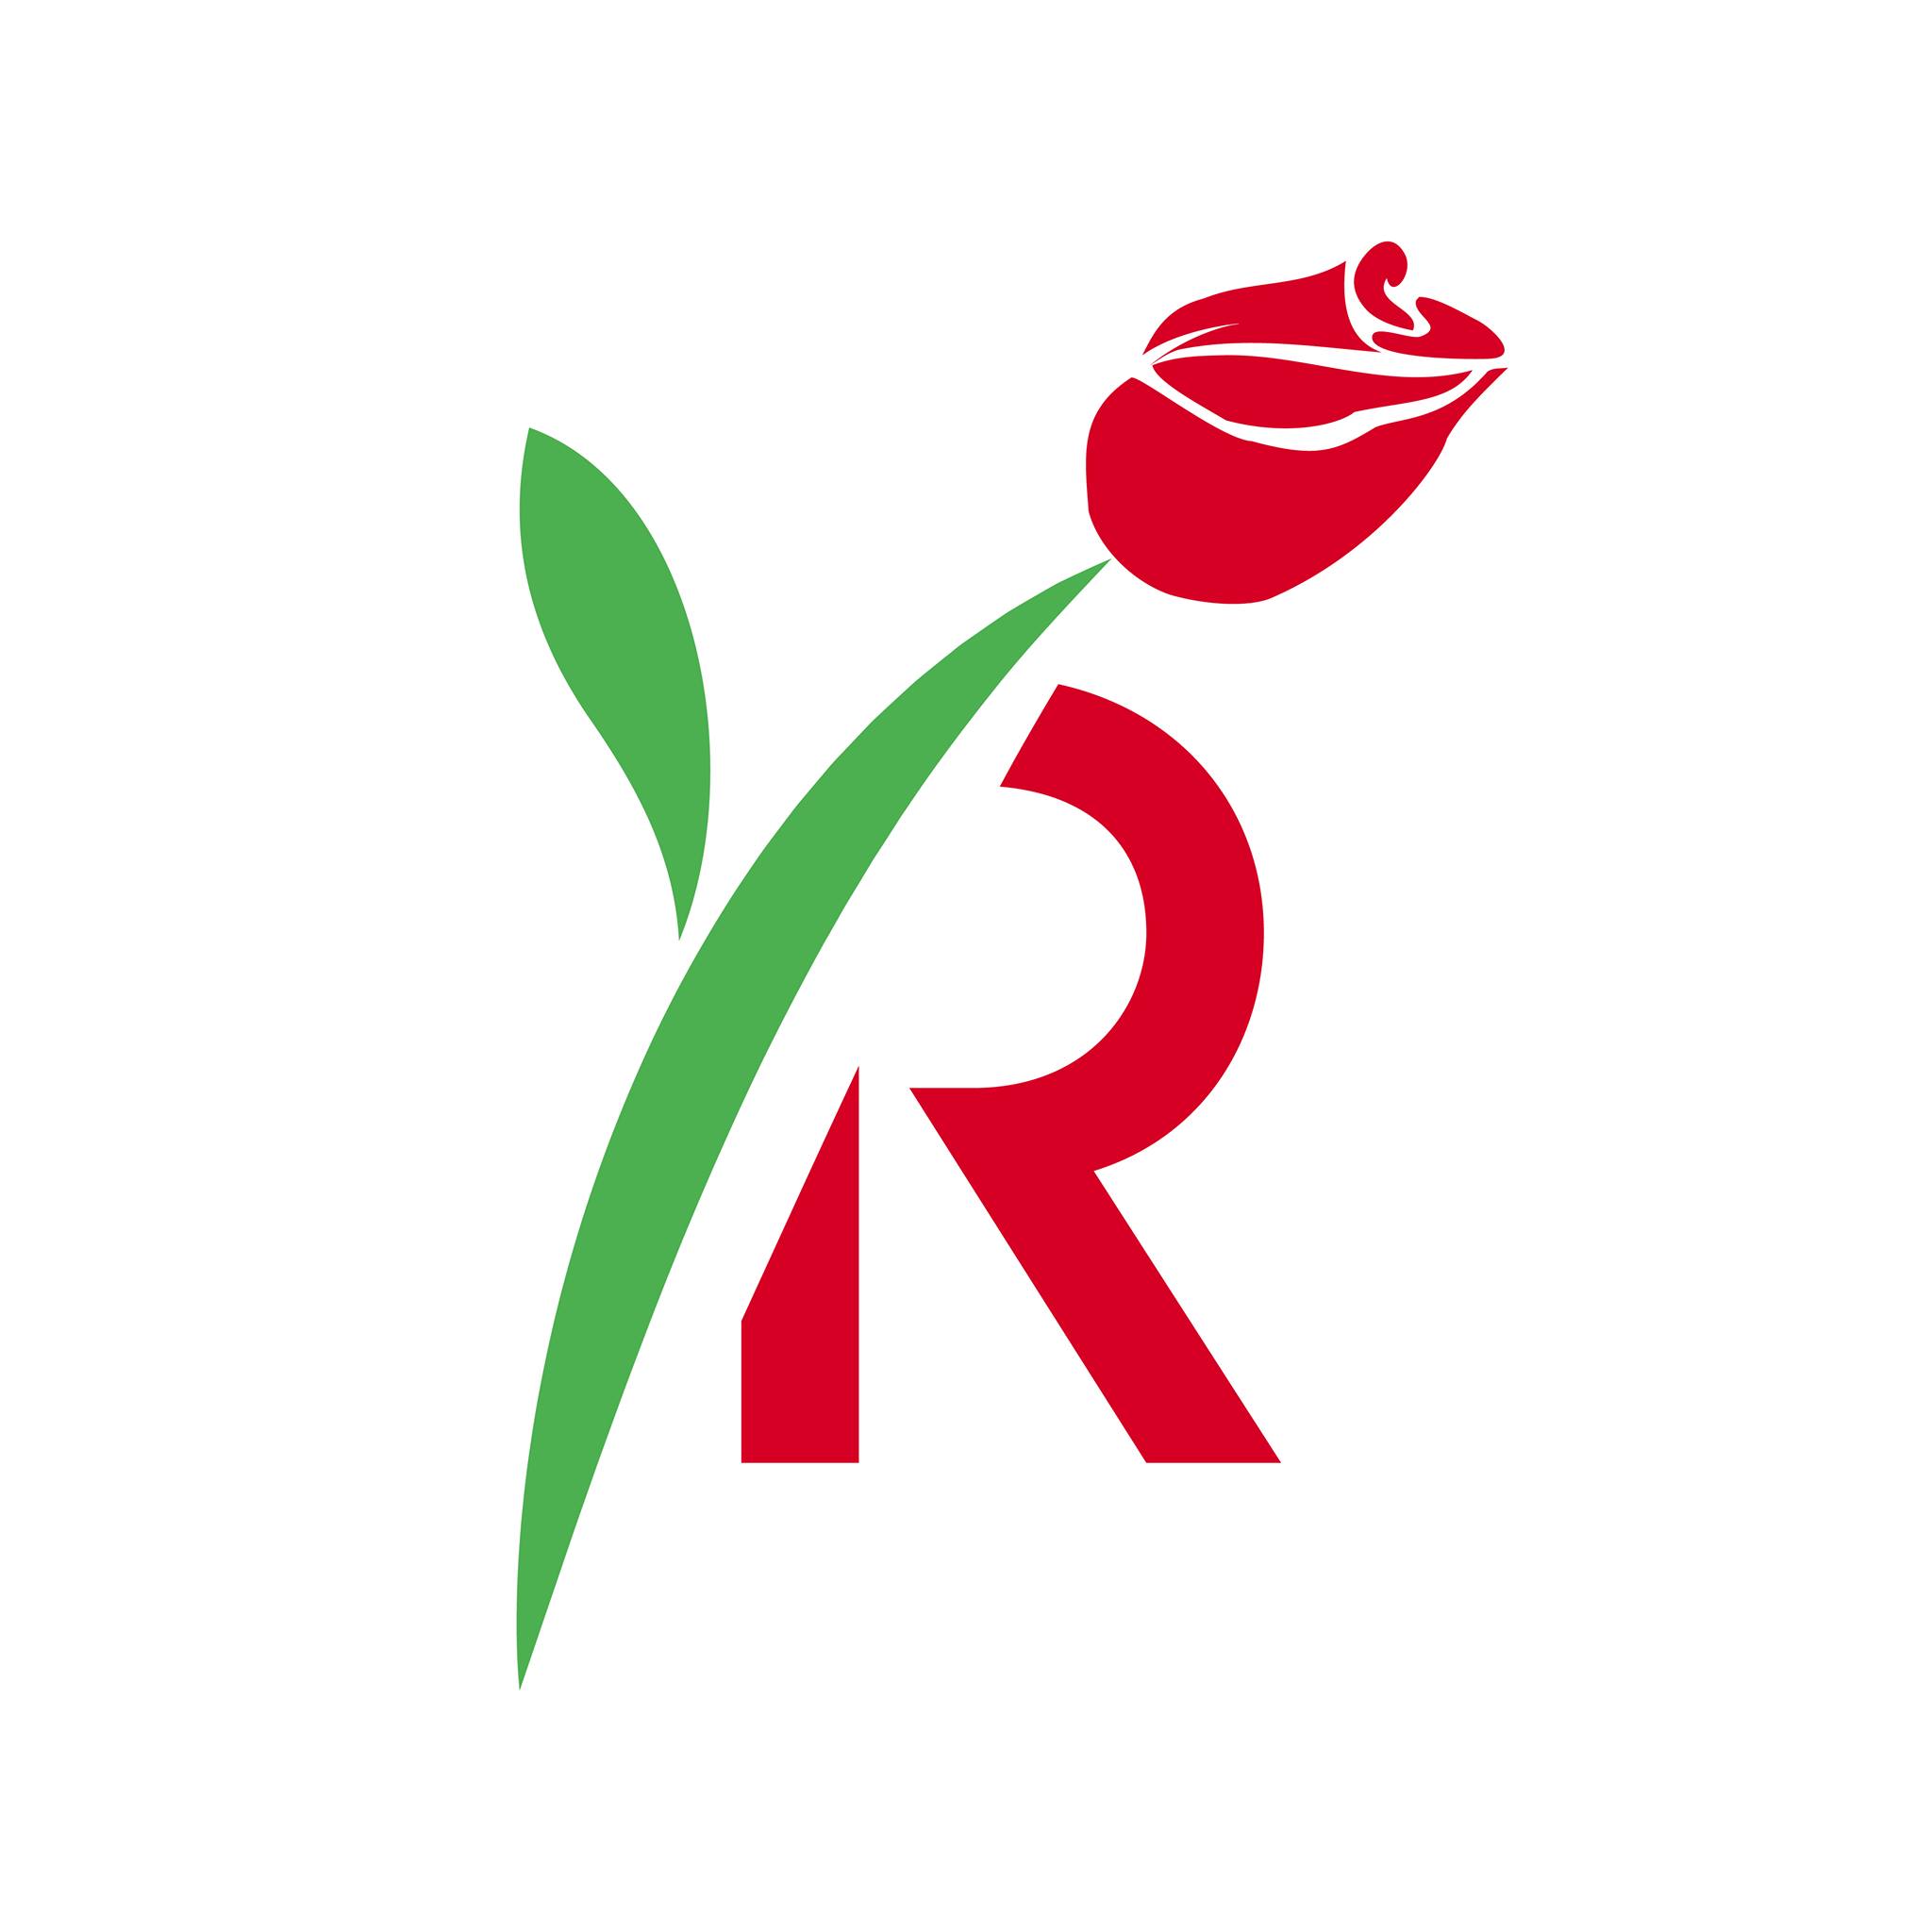 Rose Family Creative Empowerment Center - USDA